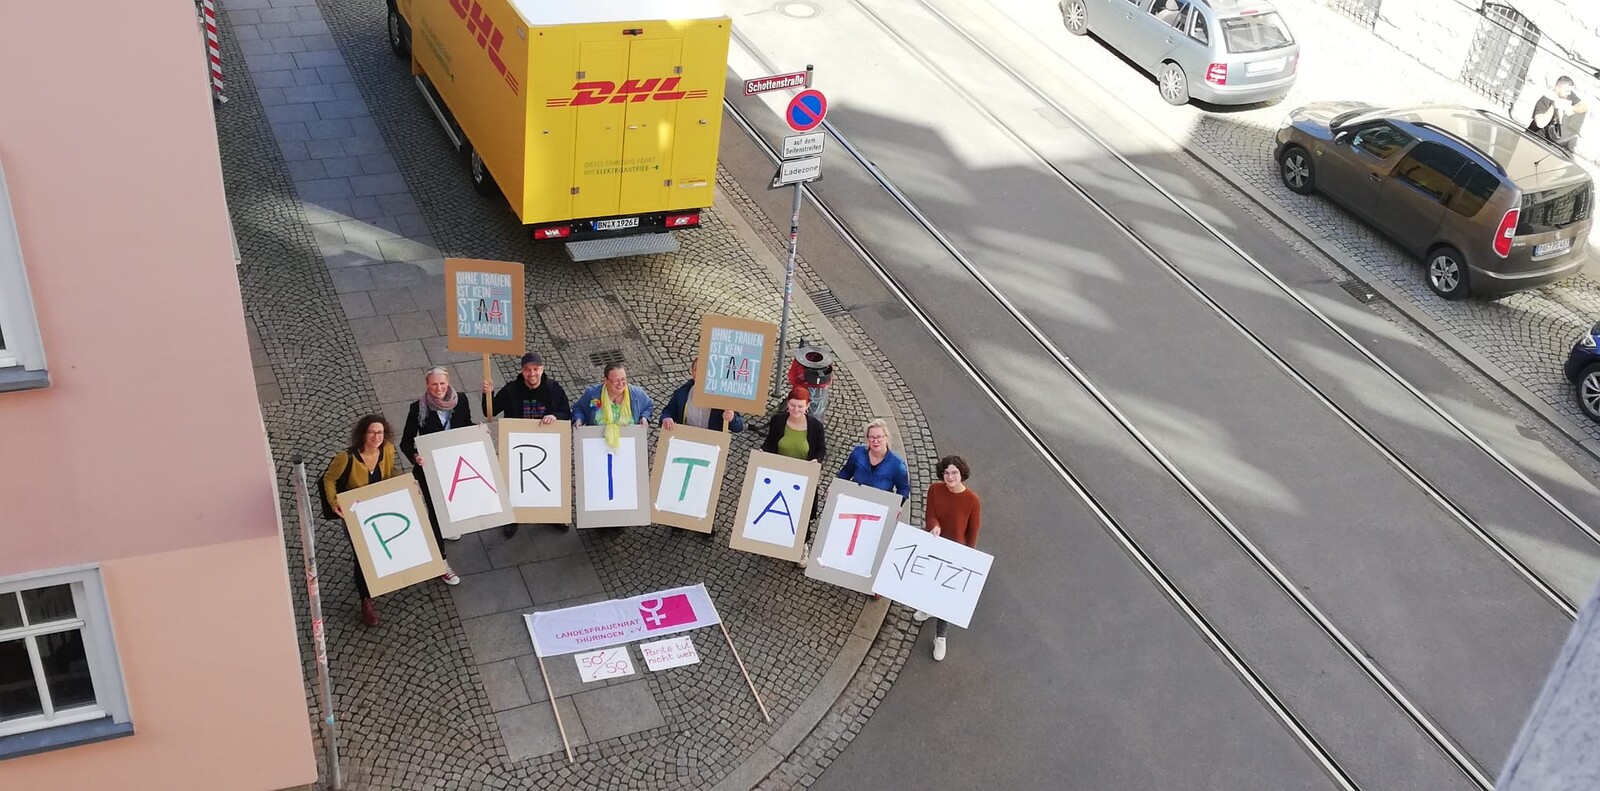 Aktion des Landesfrauenrats Thüringen auf der Johannesstraße in Erfurt. Personen halten Schilder in die Luft mit der Aufschrift "Parität Jetzt", "Ohne Frauen ist kein Staat zu machen"